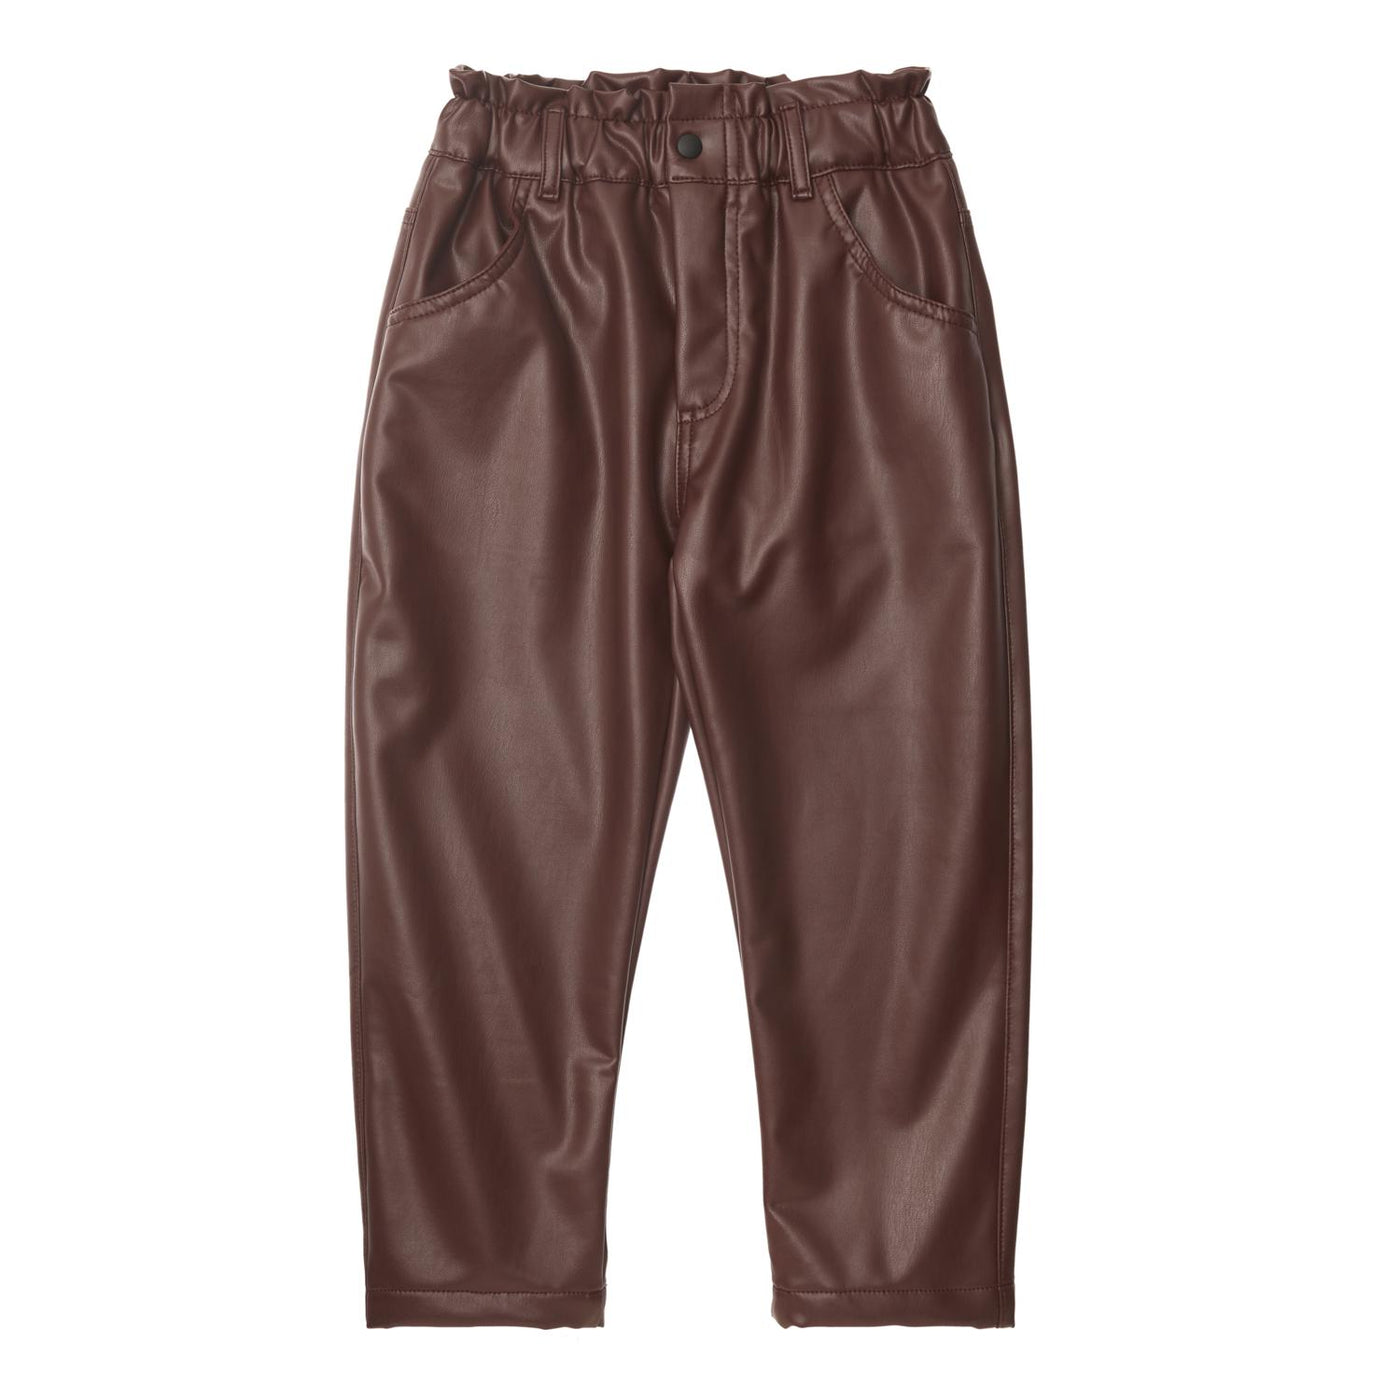 Sintetic Leather Pants in Maroon